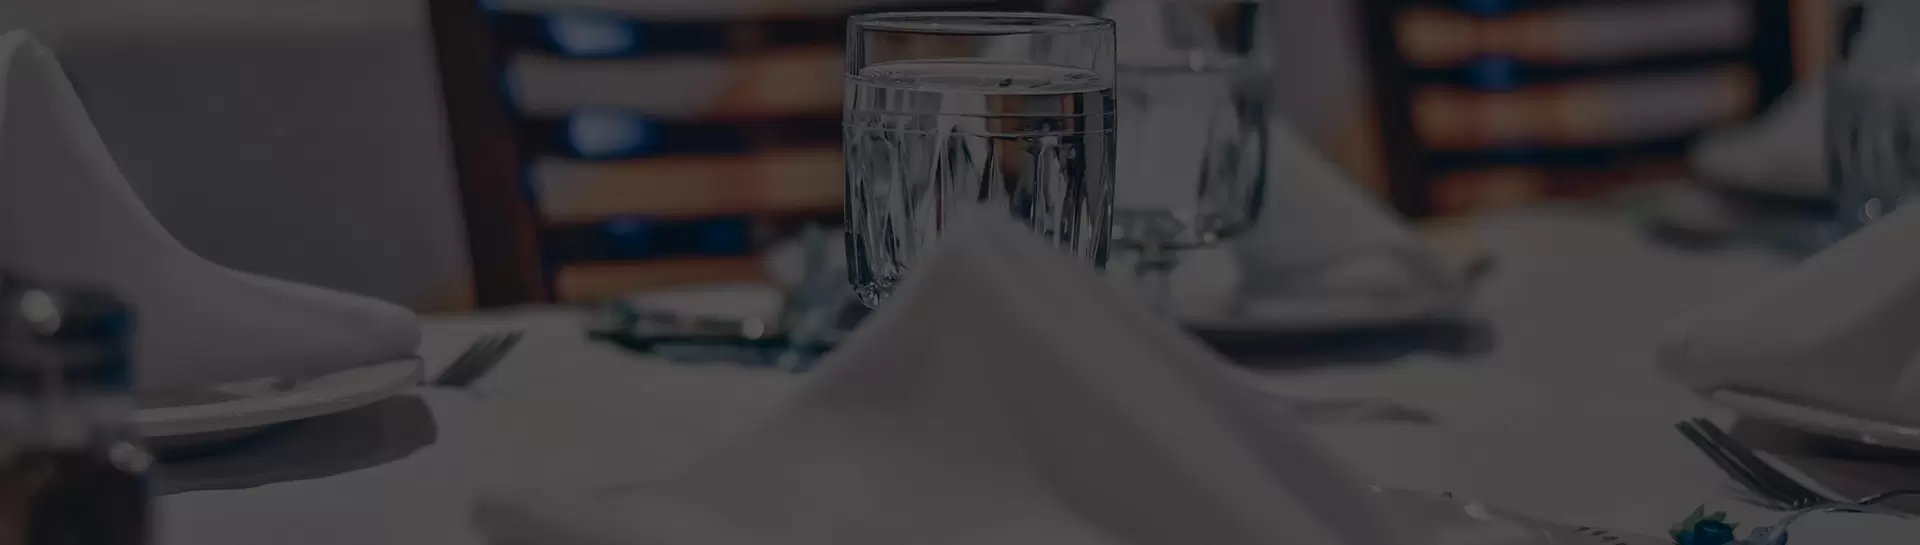 Verre et serviette sur une table